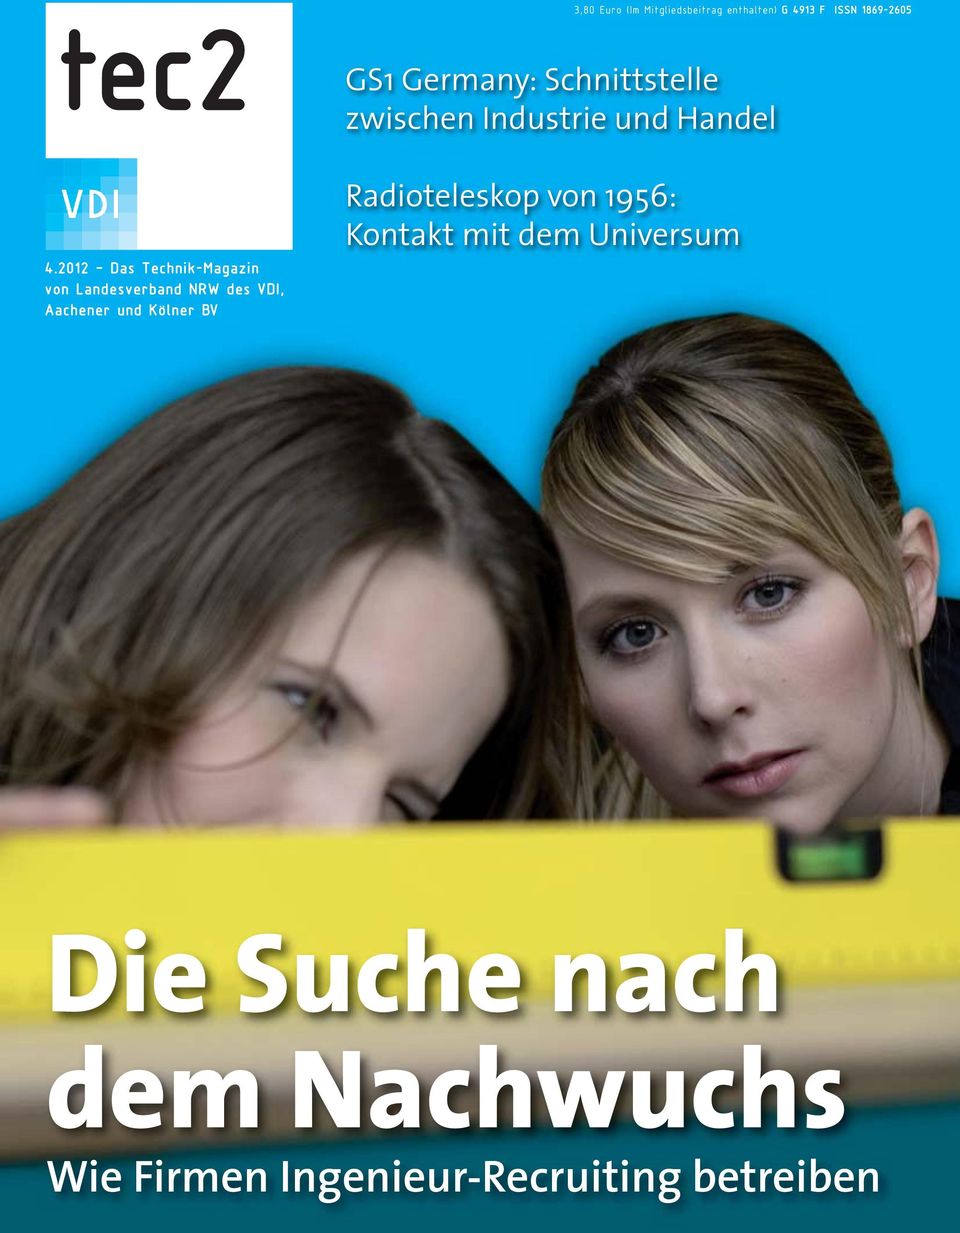 2012 Das Technik-Magazin von Landesverband NRW des VDI, er und Kölner BV